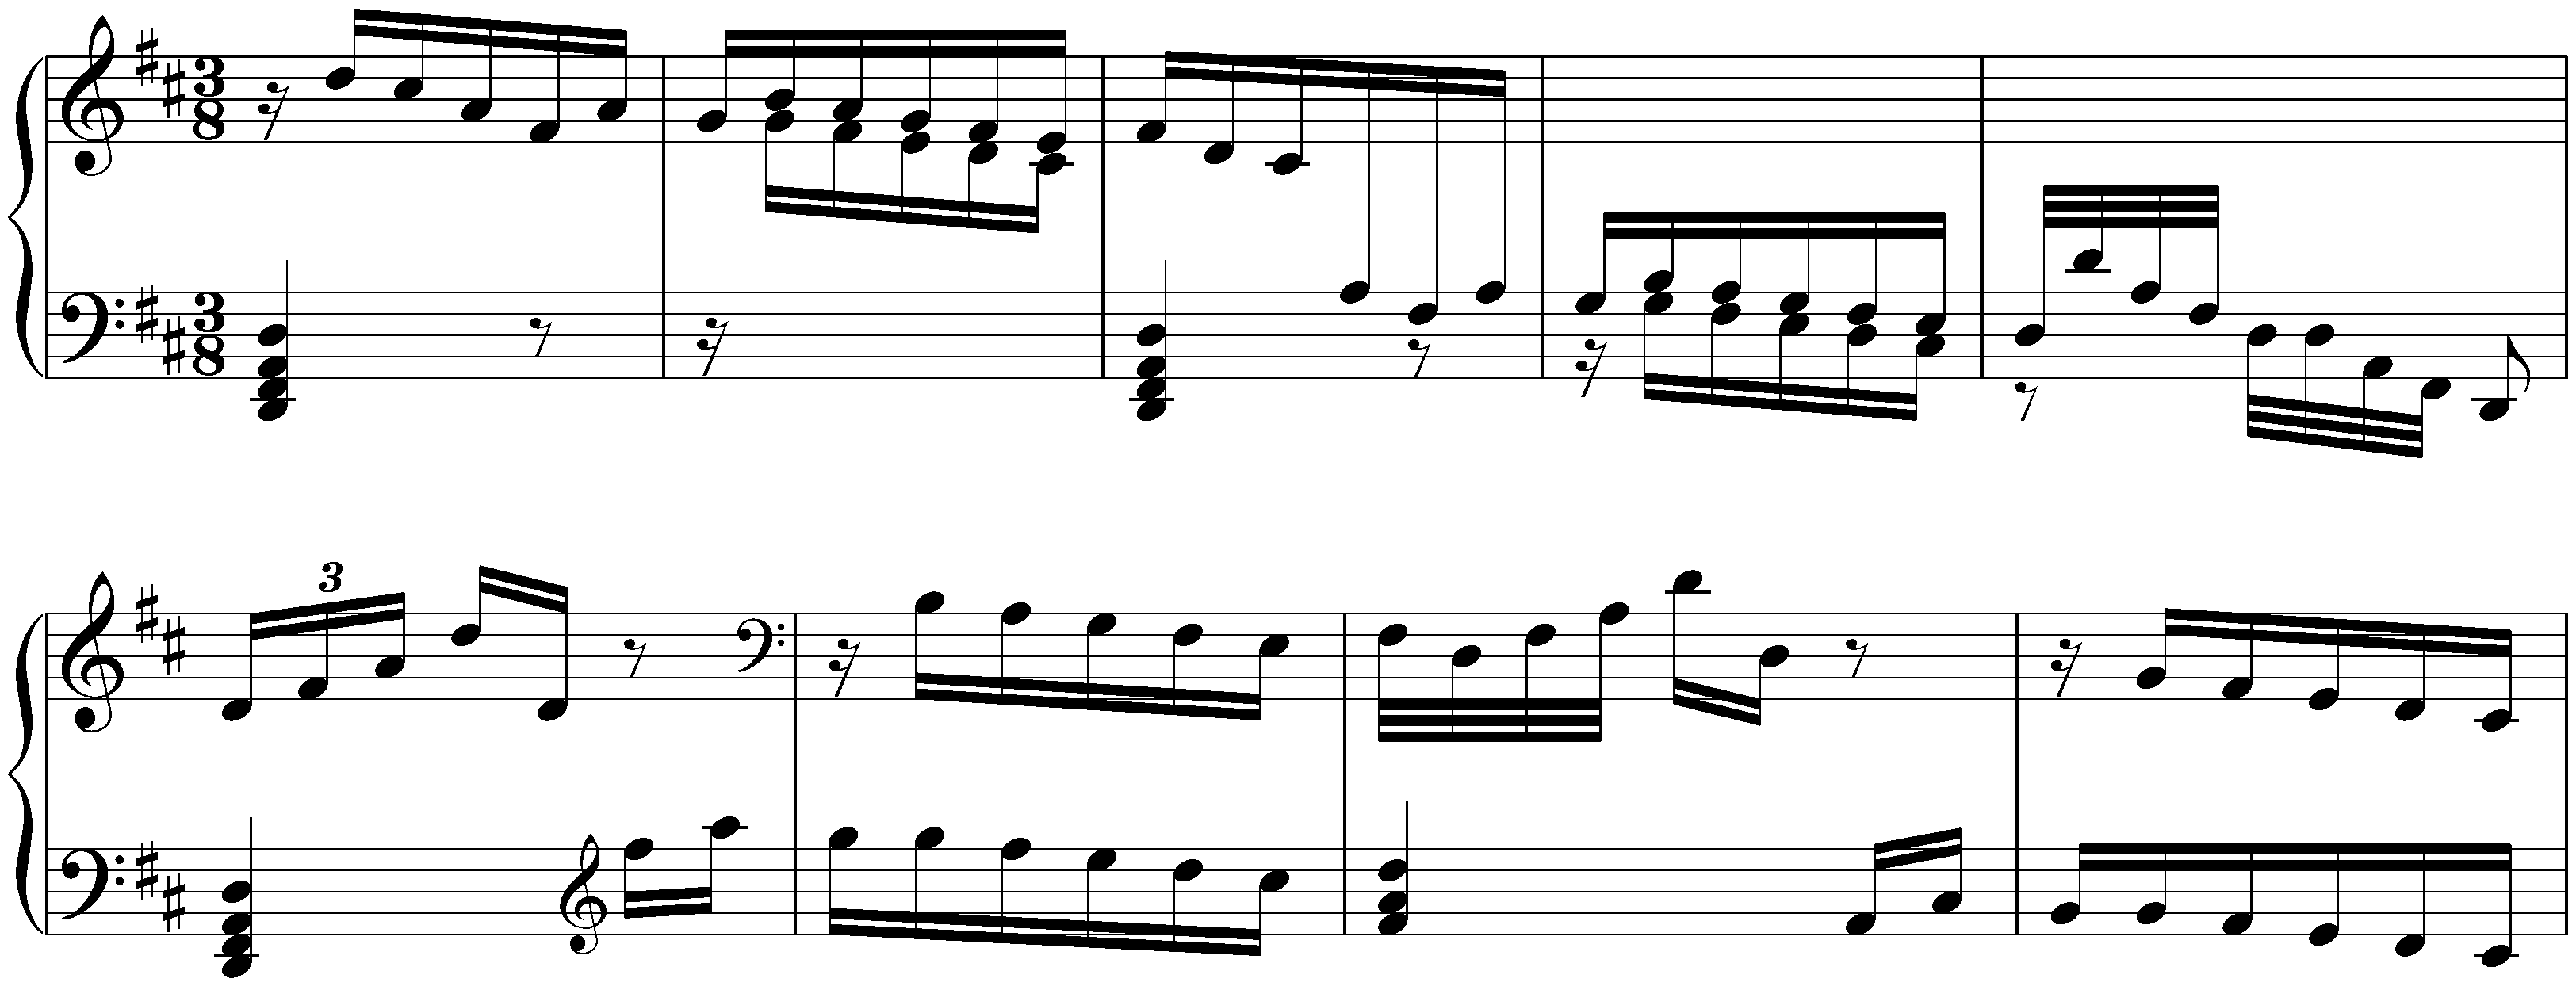 Sonatas found in Ávila; 1. D major